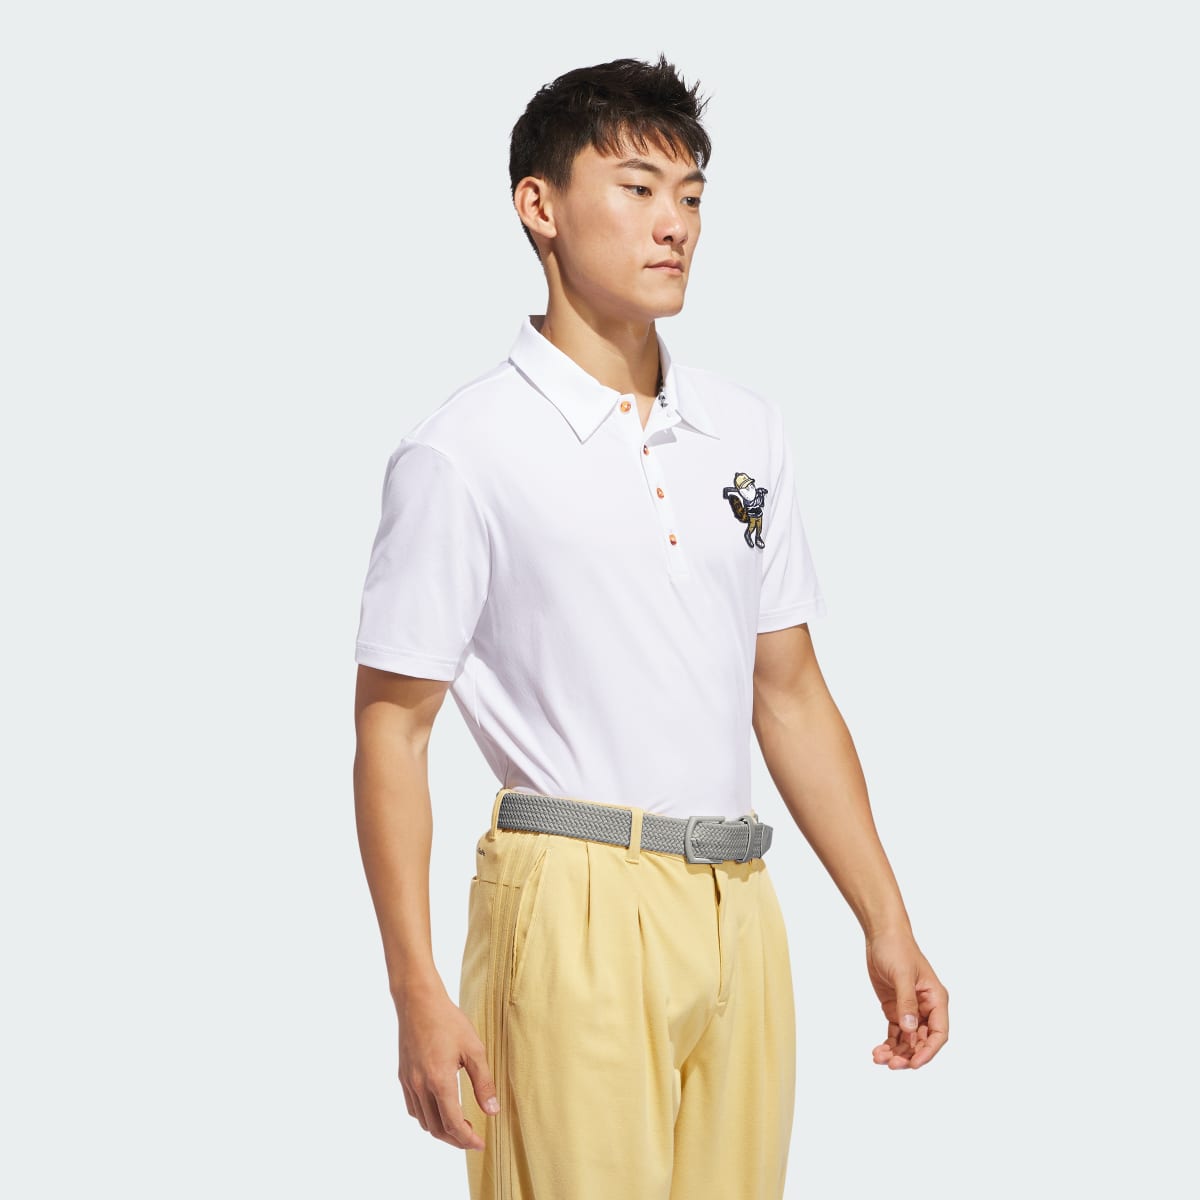 Adidas Koszulka Malbon Polo. 4